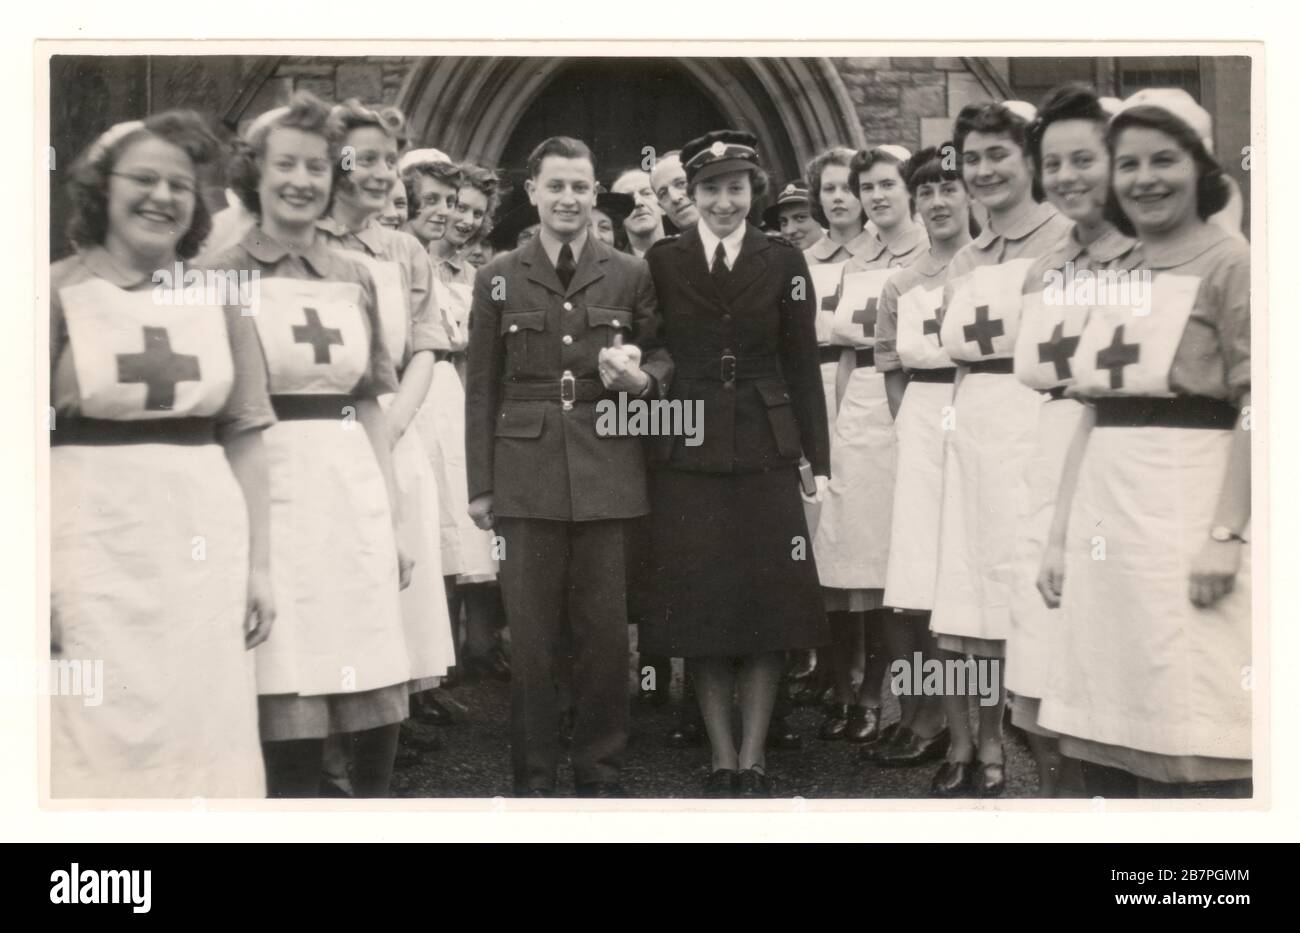 Photo de la deuxième Guerre mondiale de l'heureuse infirmière militaire de la Croix-Rouge britannique, la VAD, en uniforme de service, portant un badge de la Croix-Rouge britannique, sur une casquette - épousant un aviateur de la RAF, Bristol, Angleterre, Royaume-Uni, en date de janvier 1944 Banque D'Images